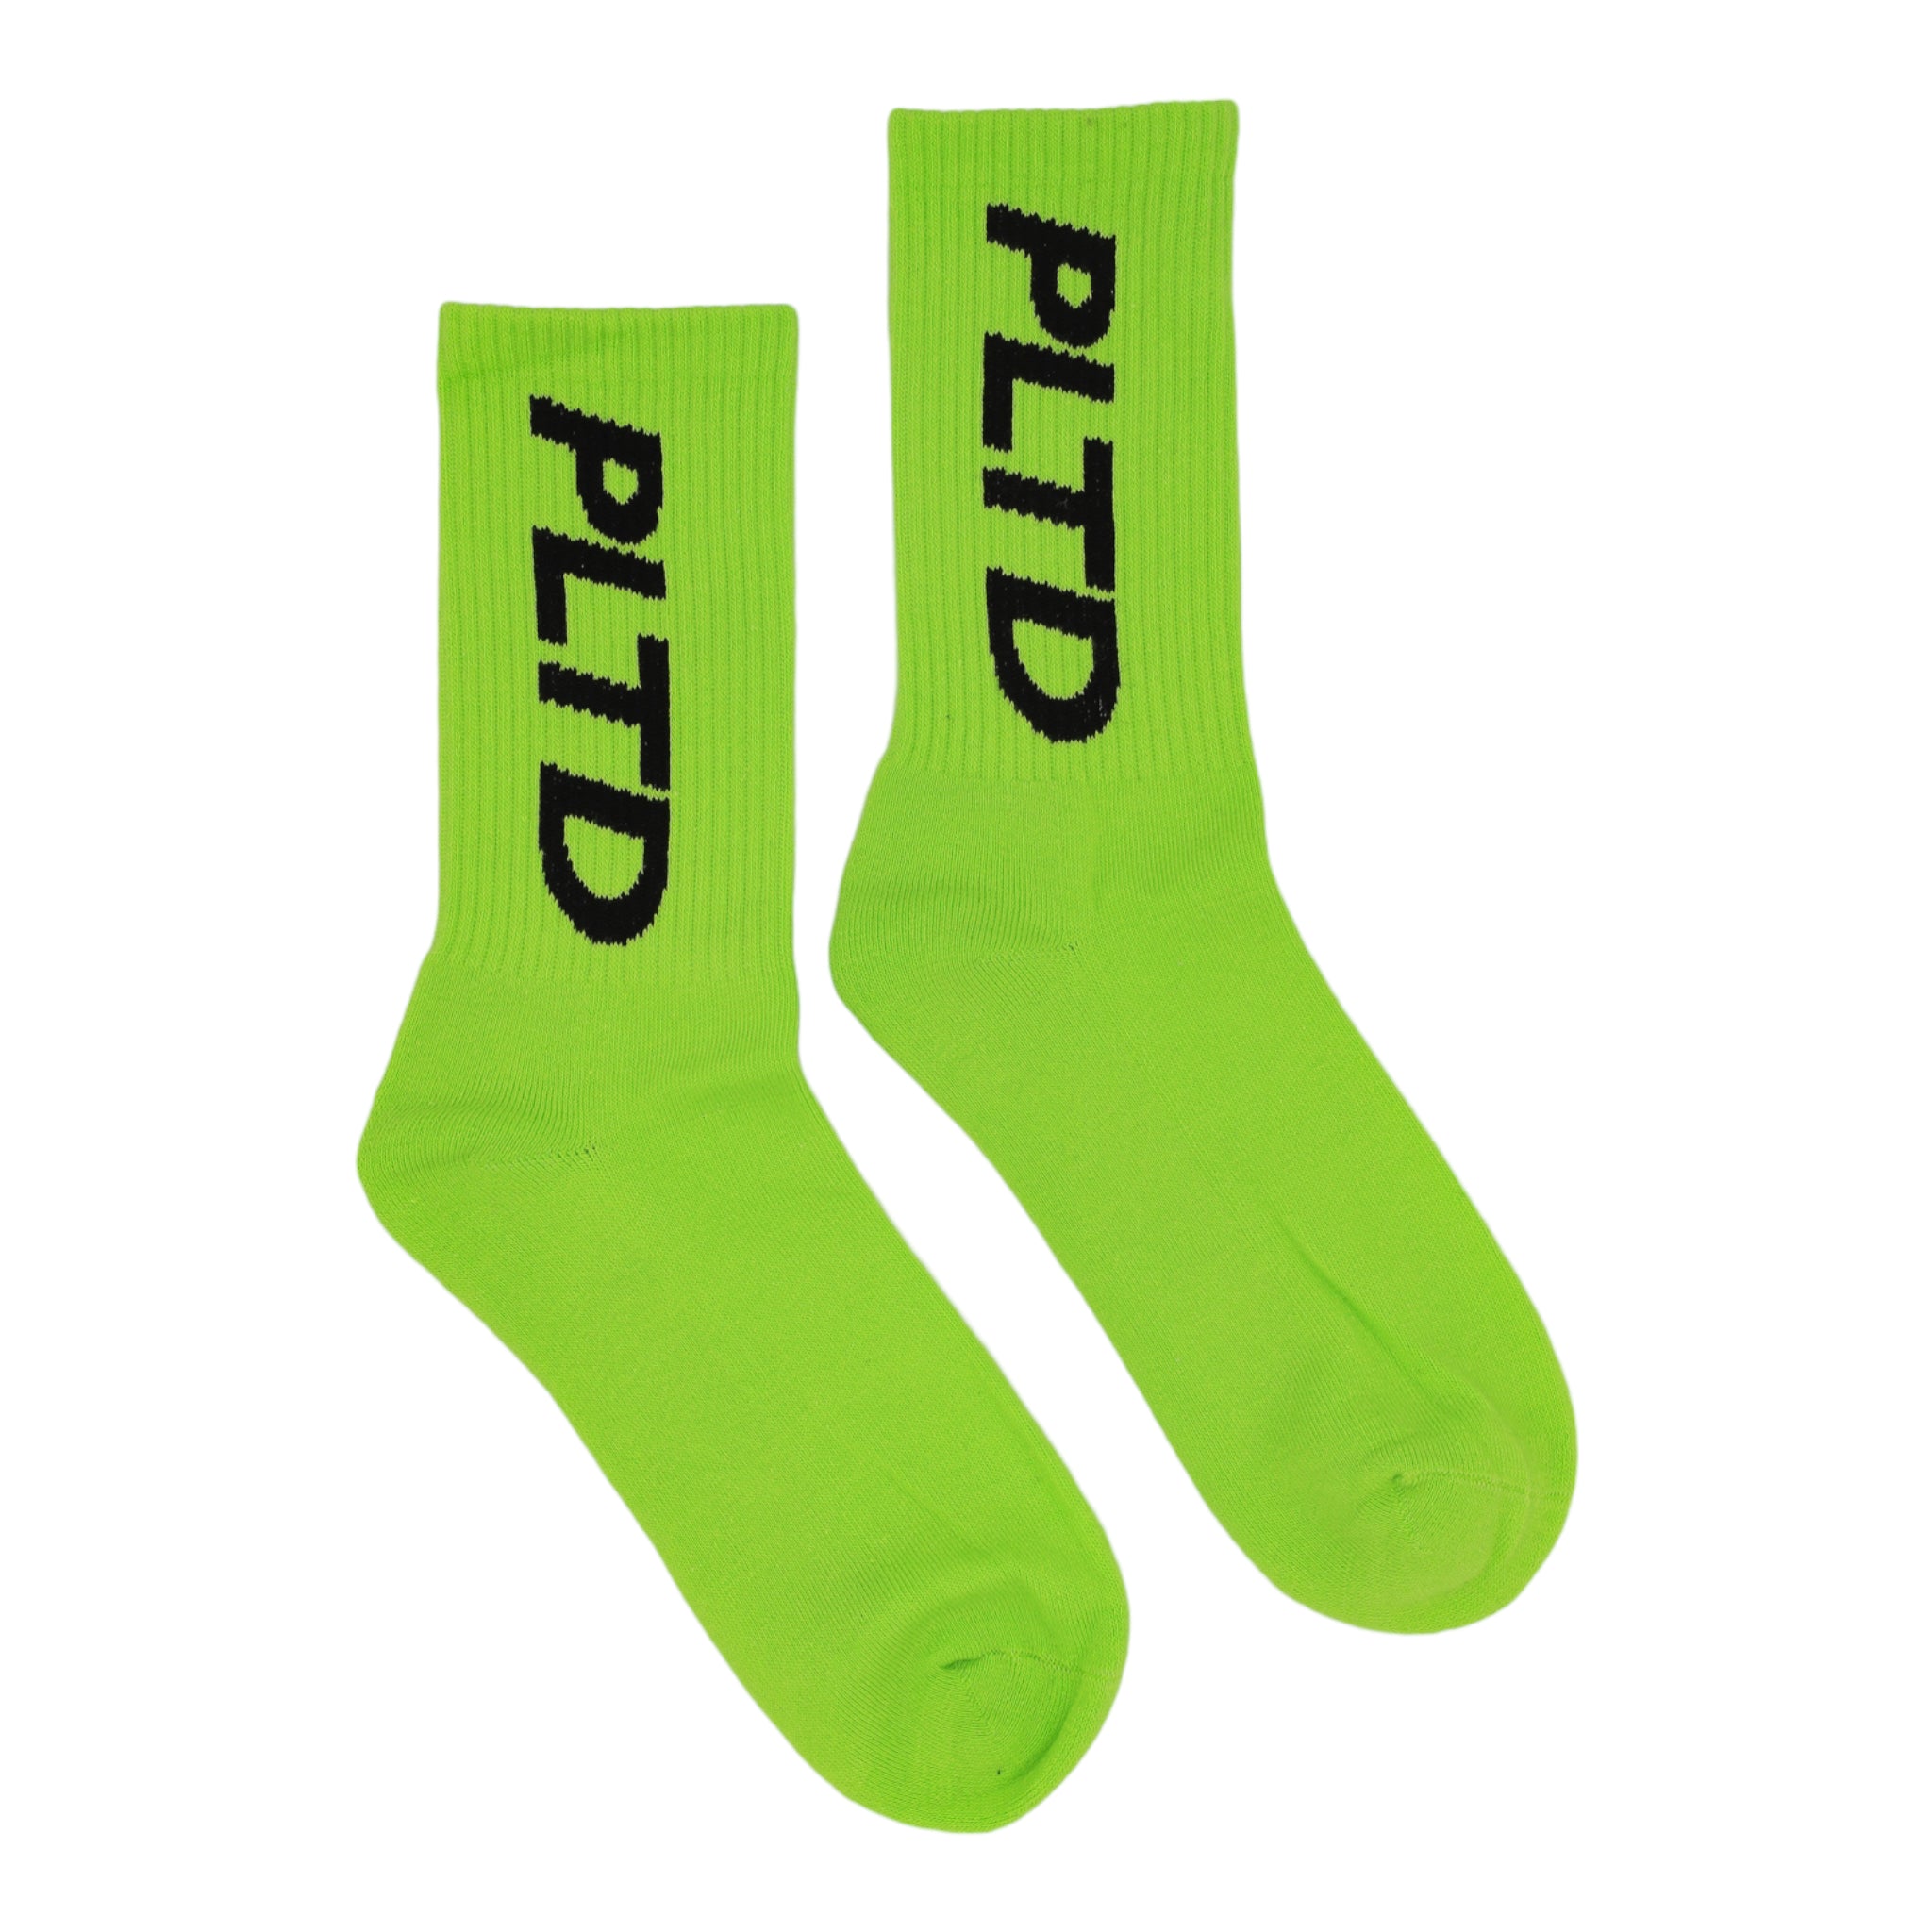 Team PLTD - Lime Socks